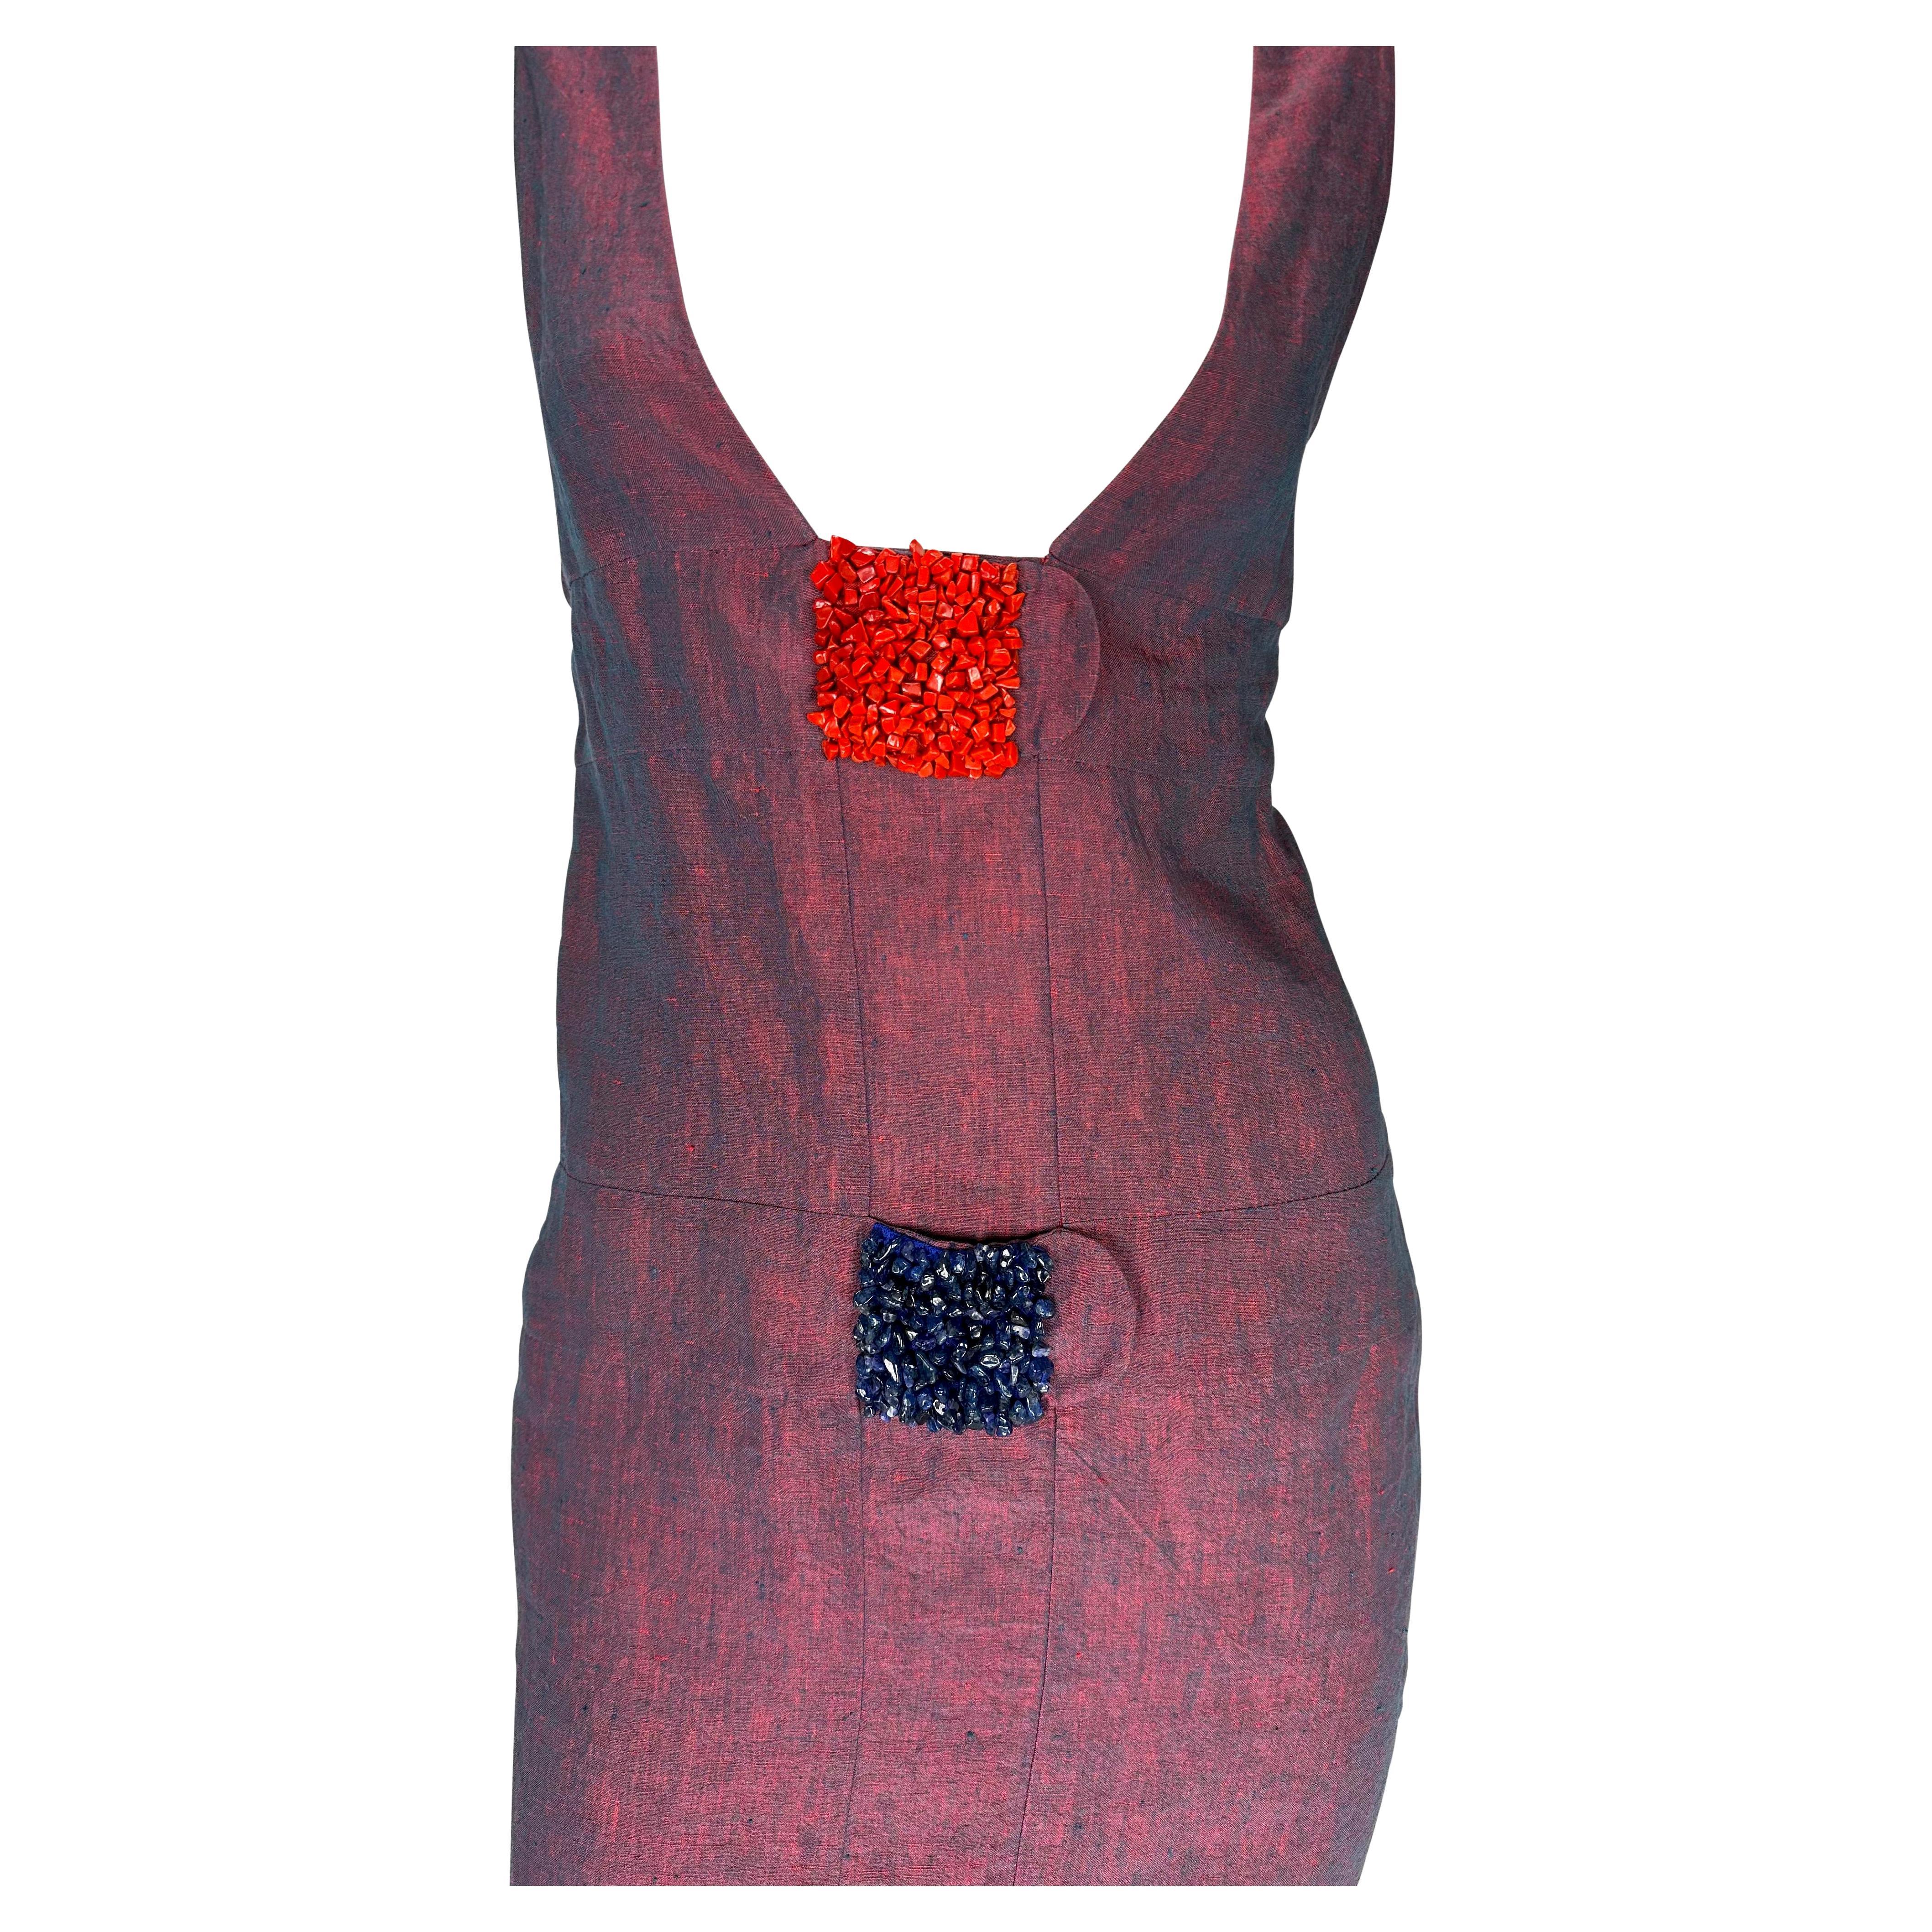 Voici une magnifique robe Fendi en lin rouge irisé, dessinée par Karl Lagerfeld. Datant des années 1990, cette robe présente un décolleté profond, des carrés perlés rouges et noirs sur le devant et un dos semi-exposé. Cette robe n'a jamais été